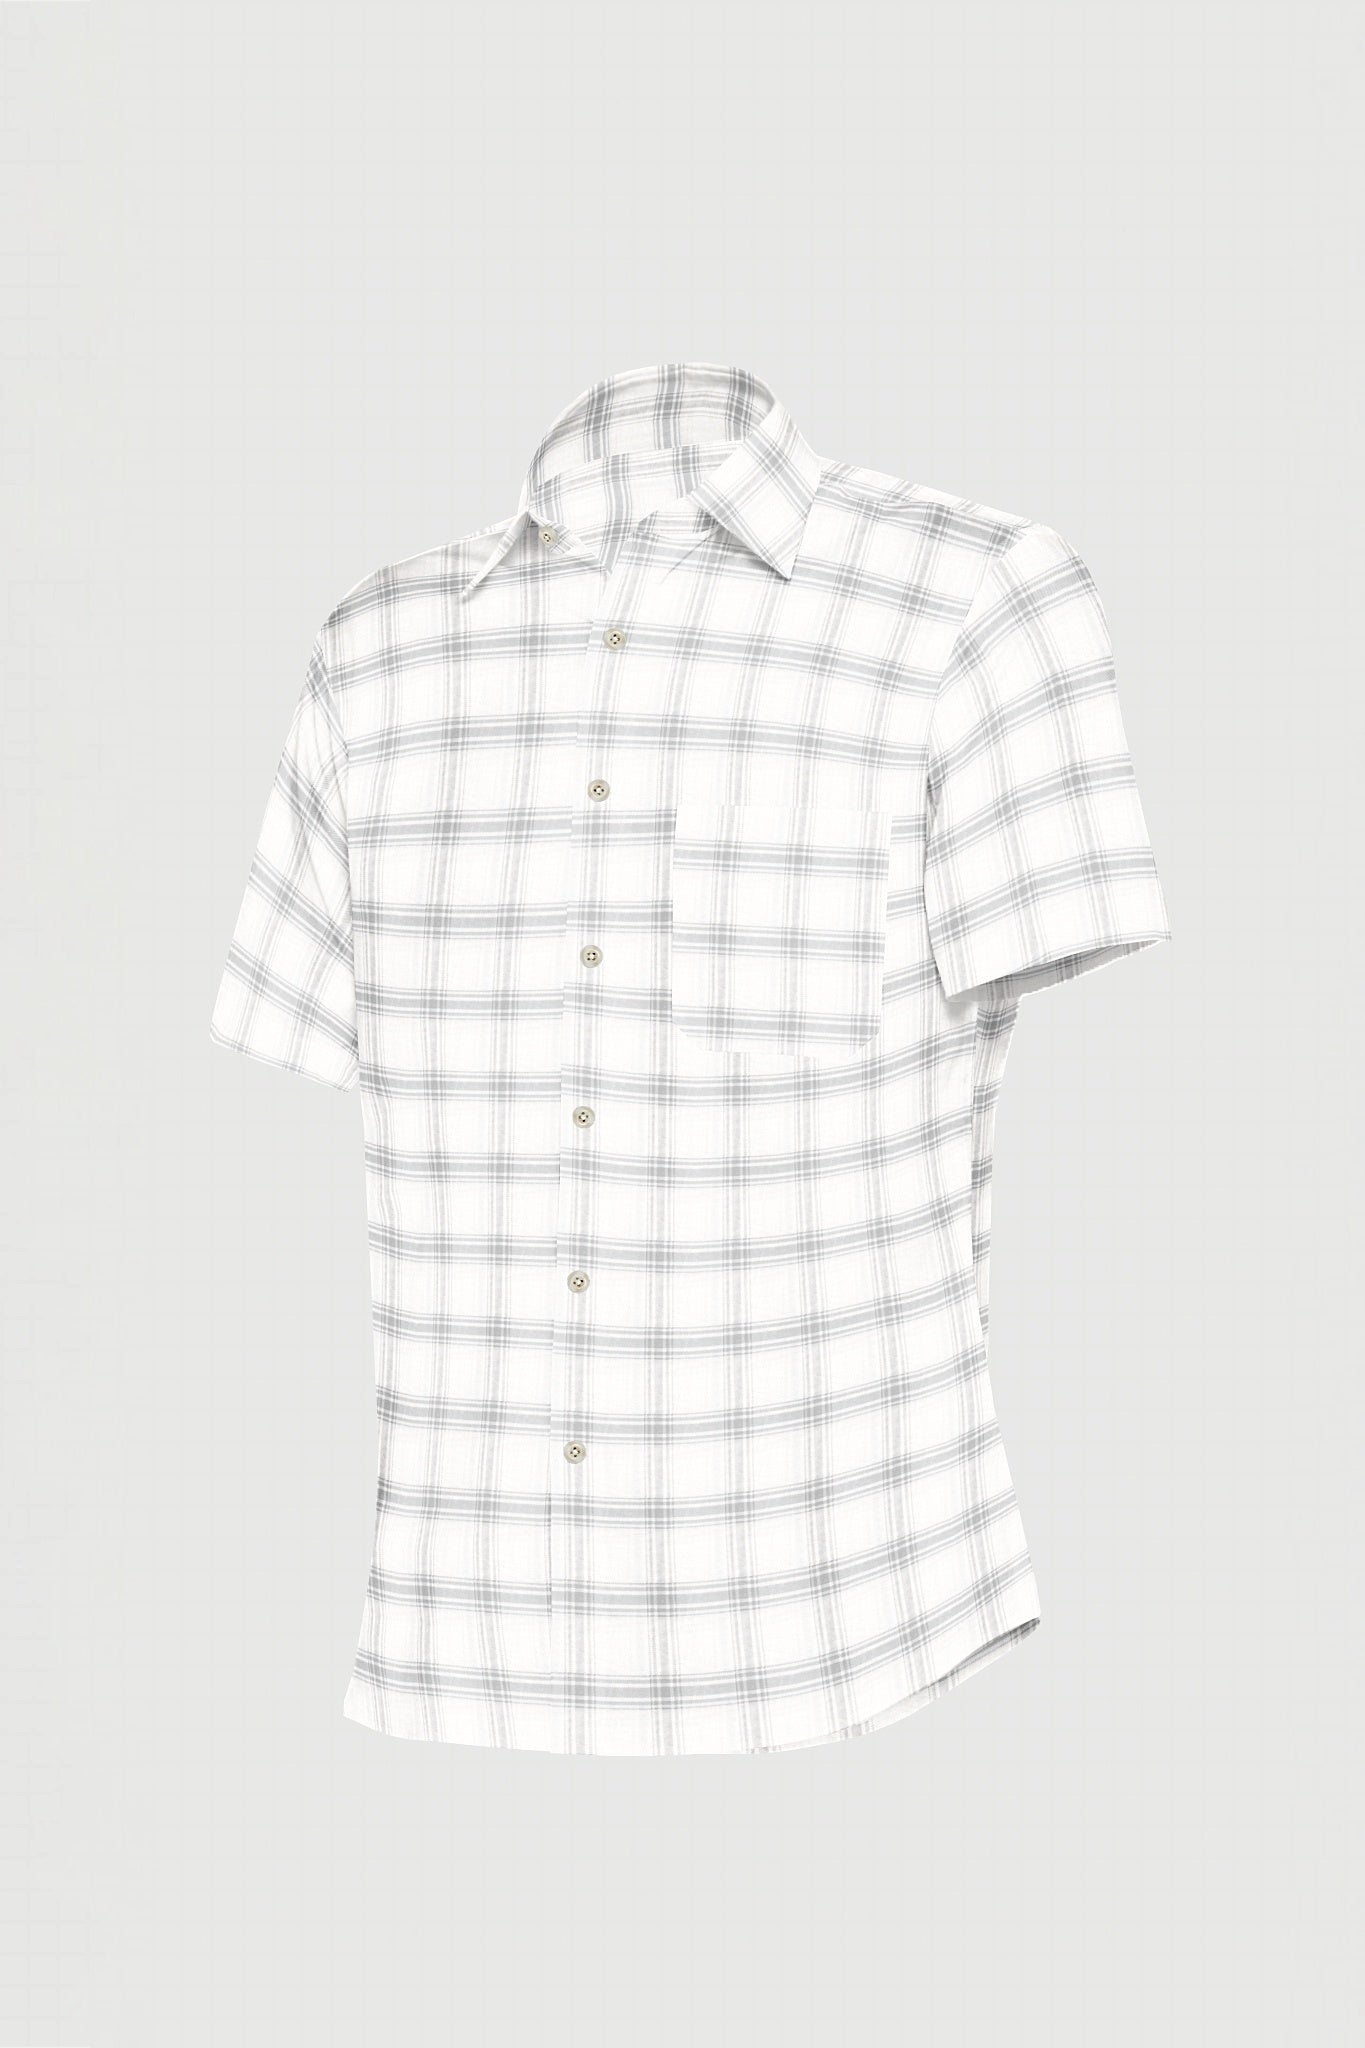 Salt White with Charcoal Black Plaid Men's Premium Cotton Shirt